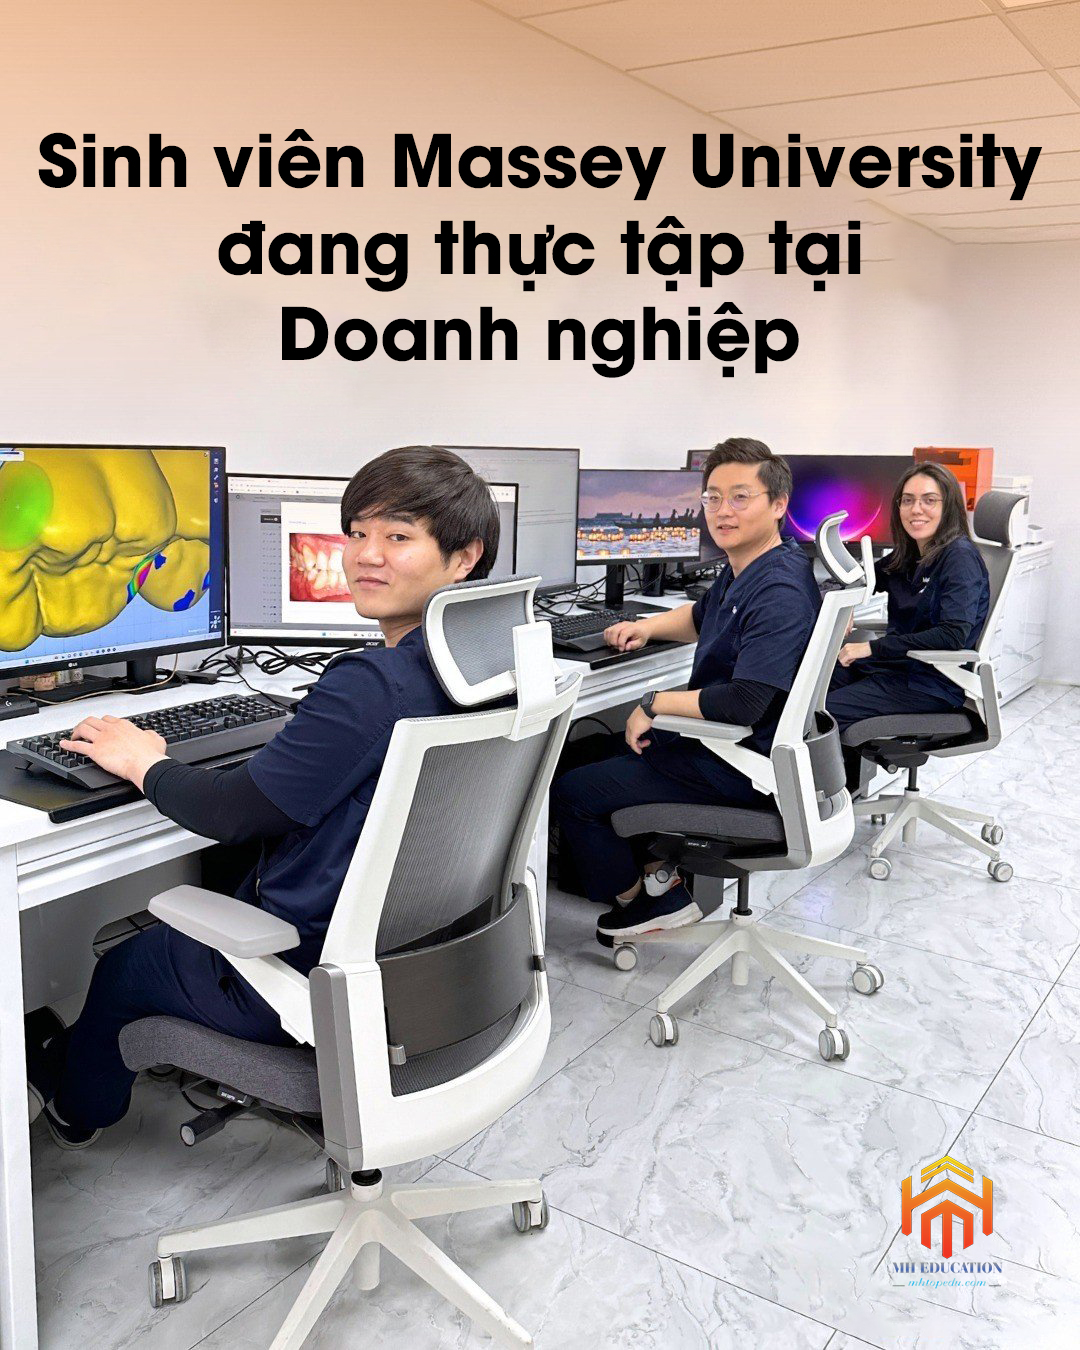 Sinh viên Trường Đại học Masssey đang thực tập tại Doanh nghiệp ở New Zealand